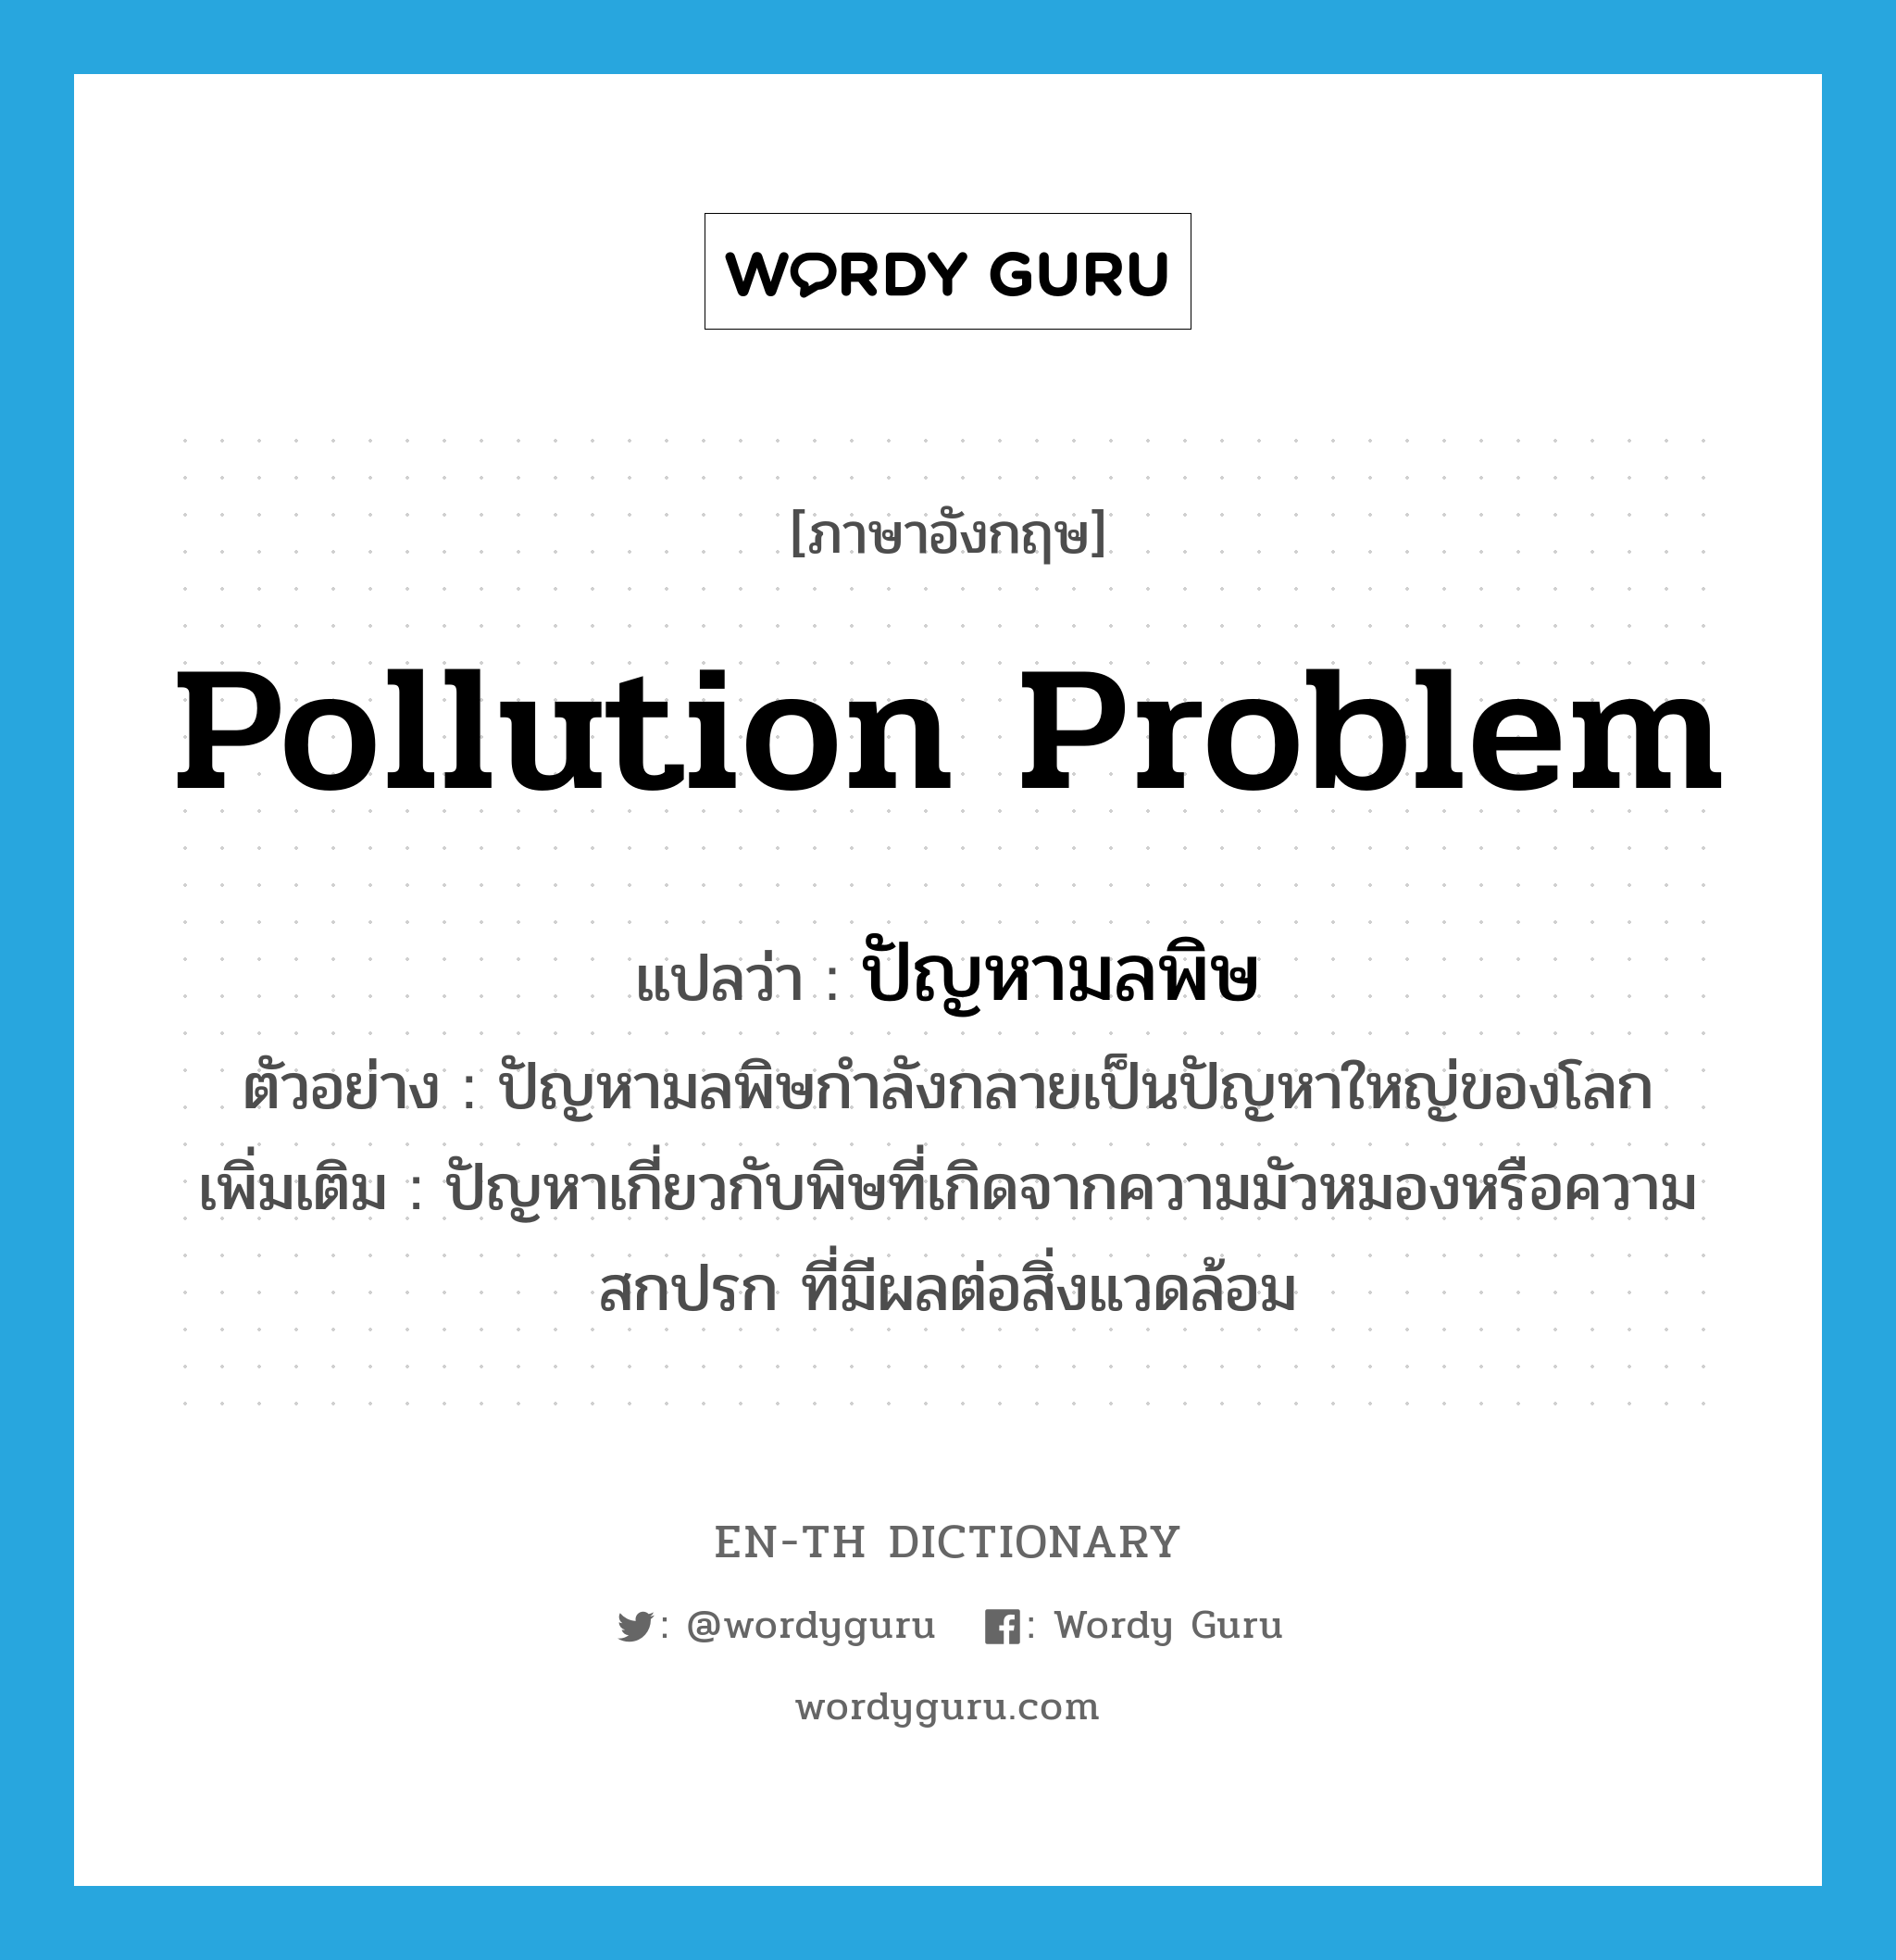 ปัญหามลพิษ ภาษาอังกฤษ?, คำศัพท์ภาษาอังกฤษ ปัญหามลพิษ แปลว่า pollution problem ประเภท N ตัวอย่าง ปัญหามลพิษกำลังกลายเป็นปัญหาใหญ่ของโลก เพิ่มเติม ปัญหาเกี่ยวกับพิษที่เกิดจากความมัวหมองหรือความสกปรก ที่มีผลต่อสิ่งแวดล้อม หมวด N